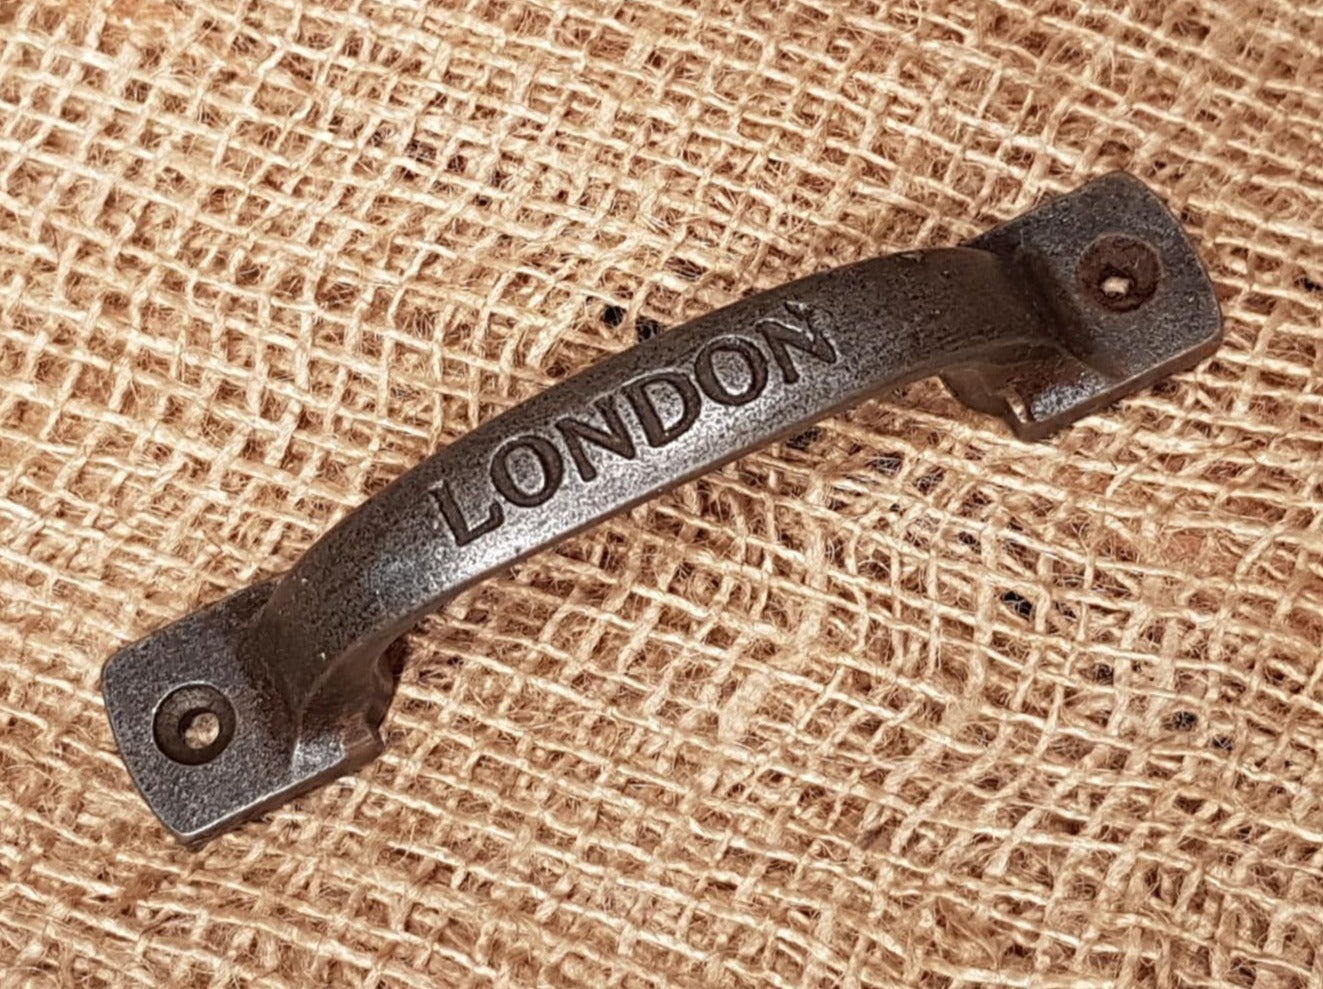 Square D Handle 5" Antique Iron - London Horizontal/Vertical